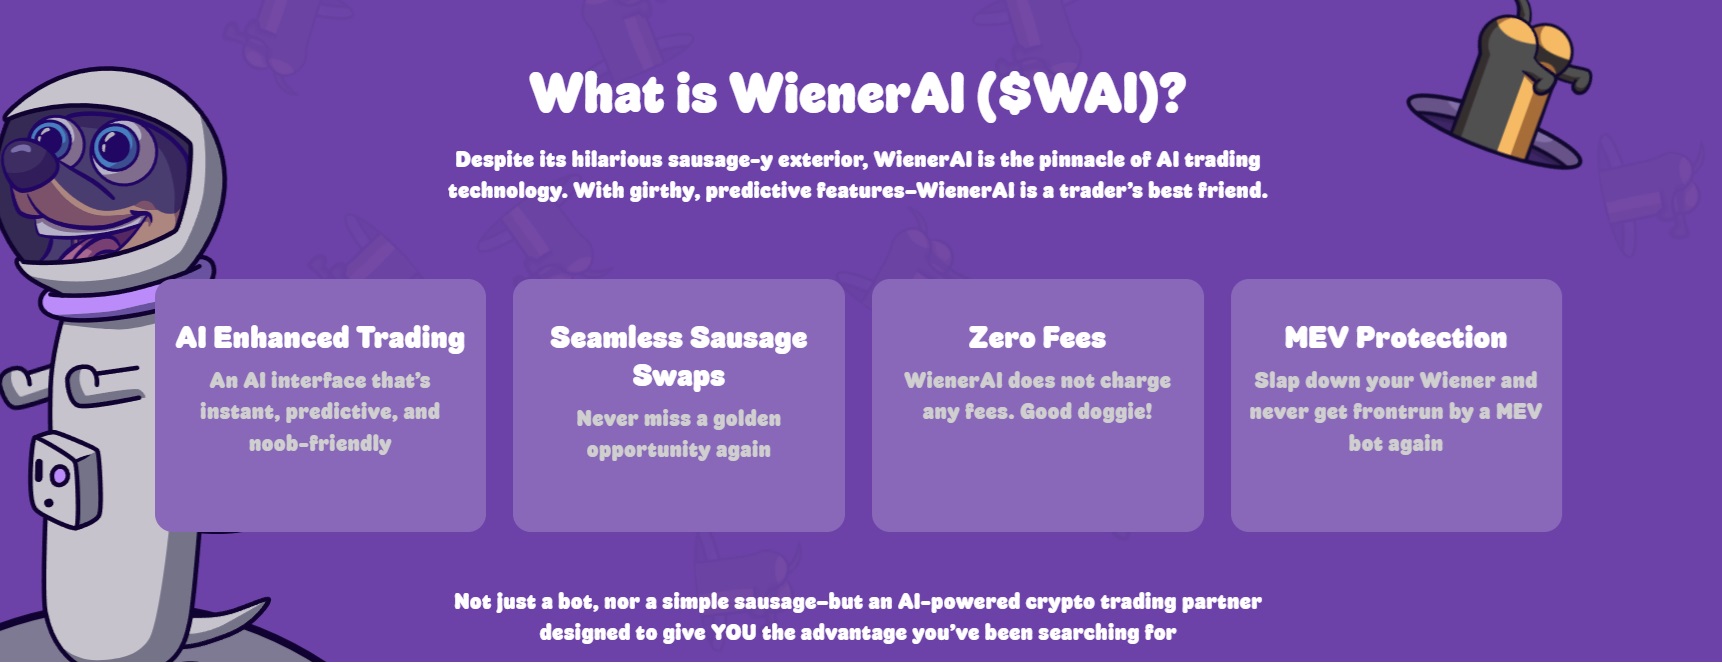 What Is WienerAI